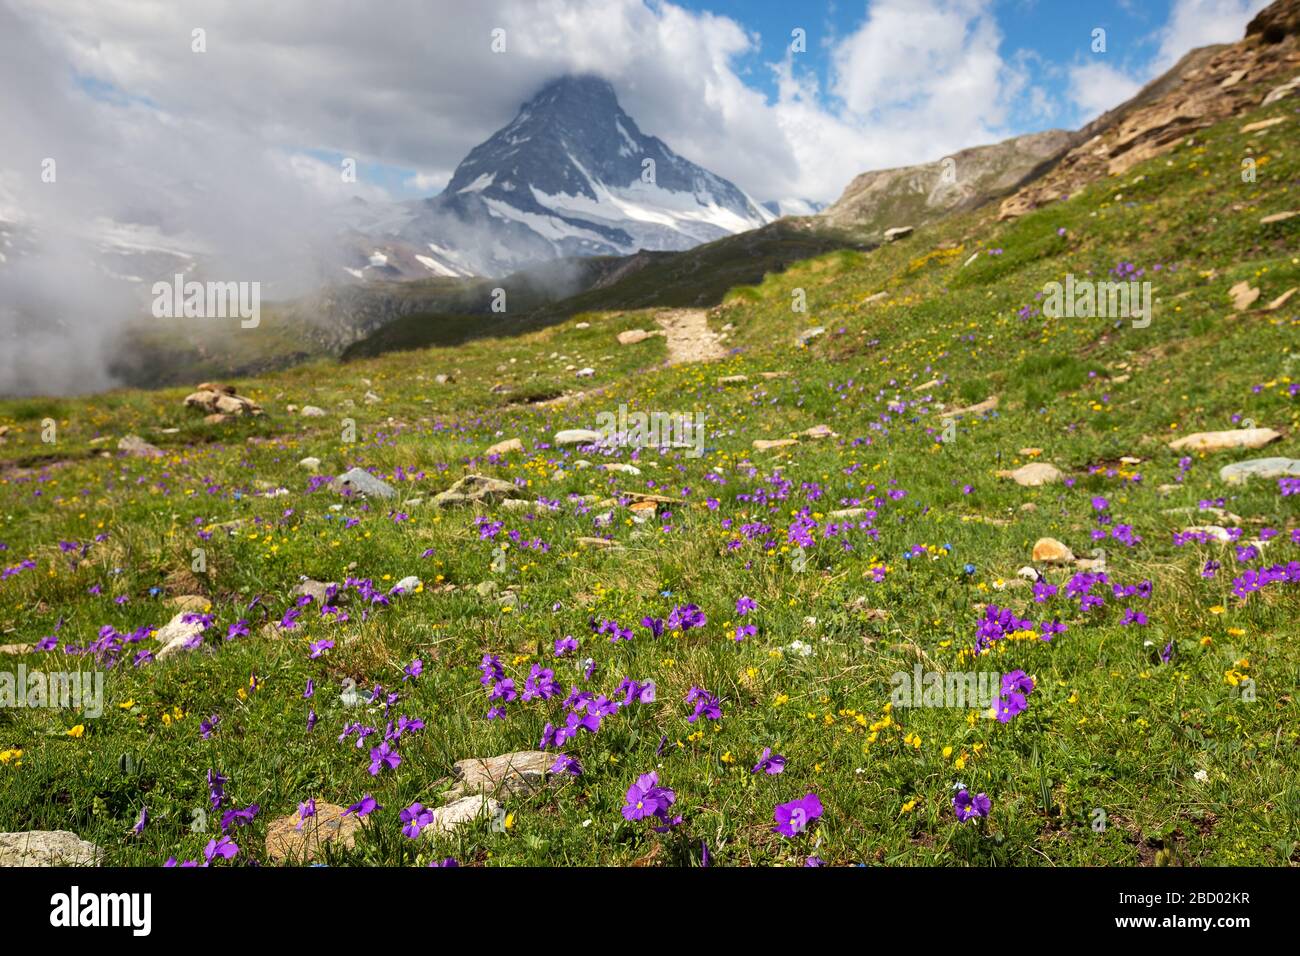 Fleurs alpines (Viola calcarata L.) et paysage alpin. Le massif du Cervin (Cervino) en arrière-plan. Zermatt. Valais. Alpes suisses. Europe. Banque D'Images